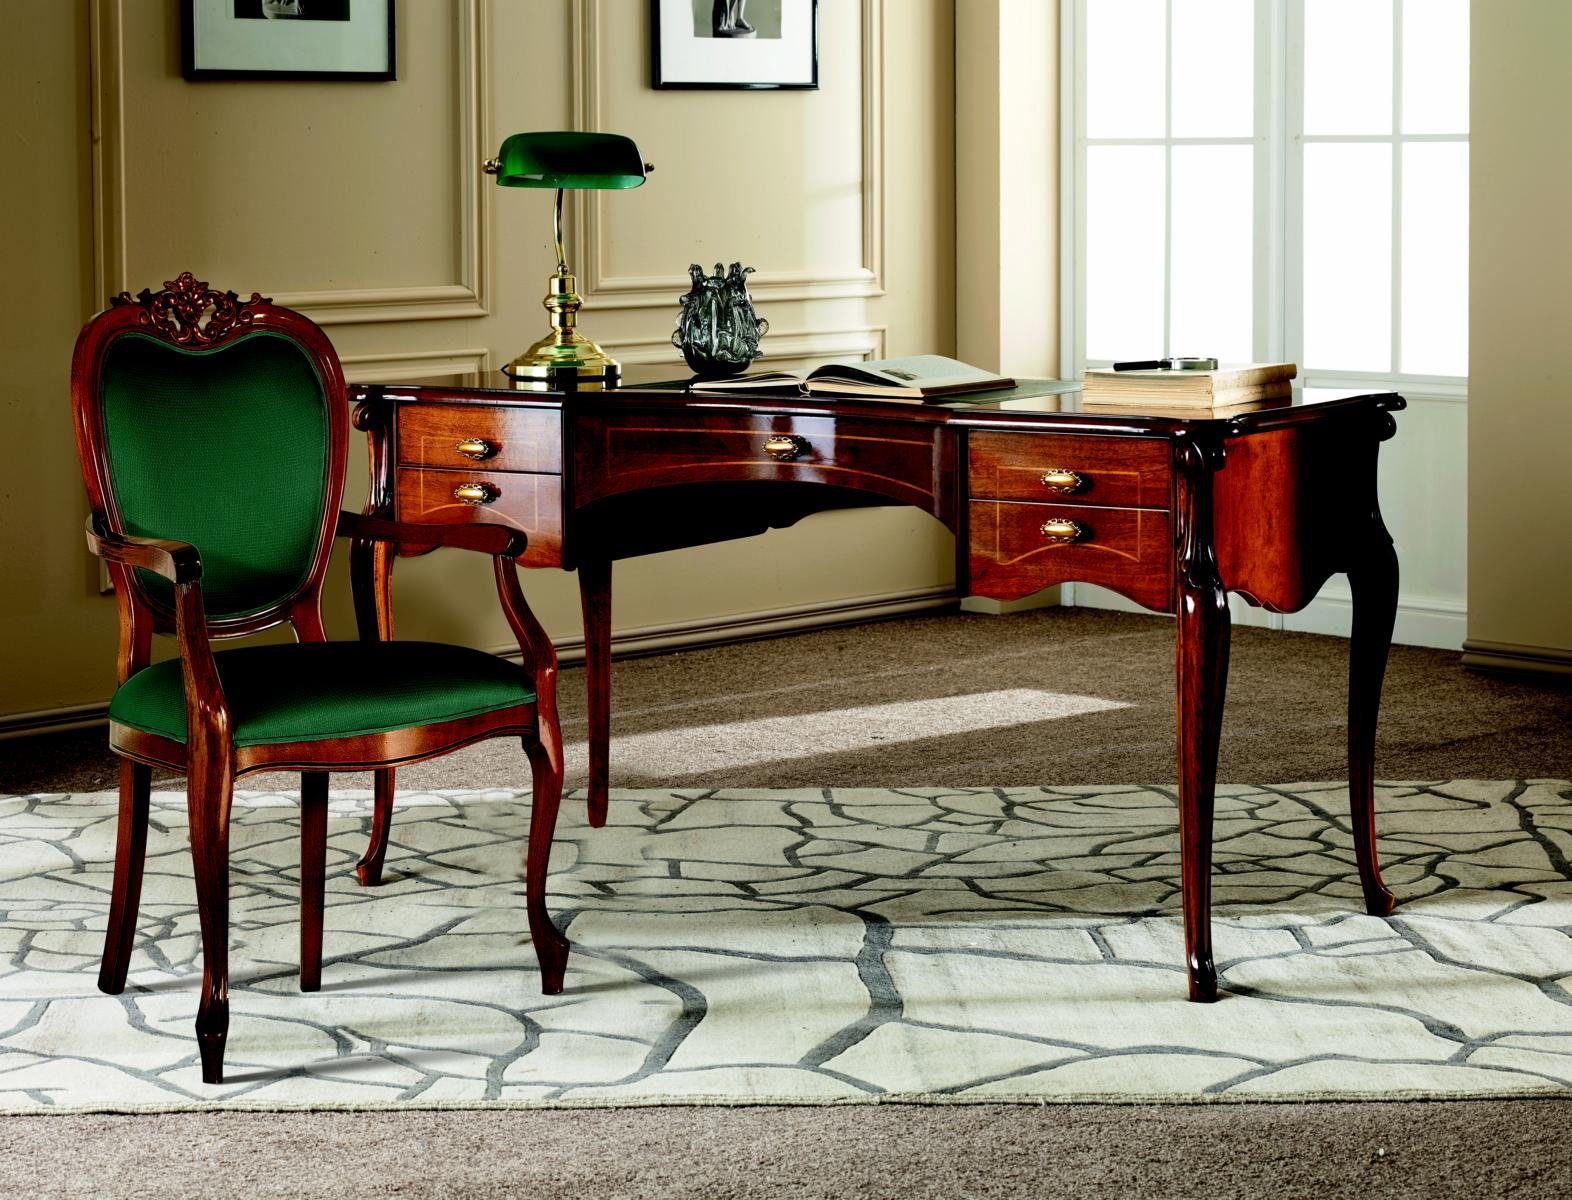 JVmoebel Schreibtisch Italienische Klassisches Holz Möbel Luxus Schreibtisch Büromöbel Stil Barock | Schreibtische